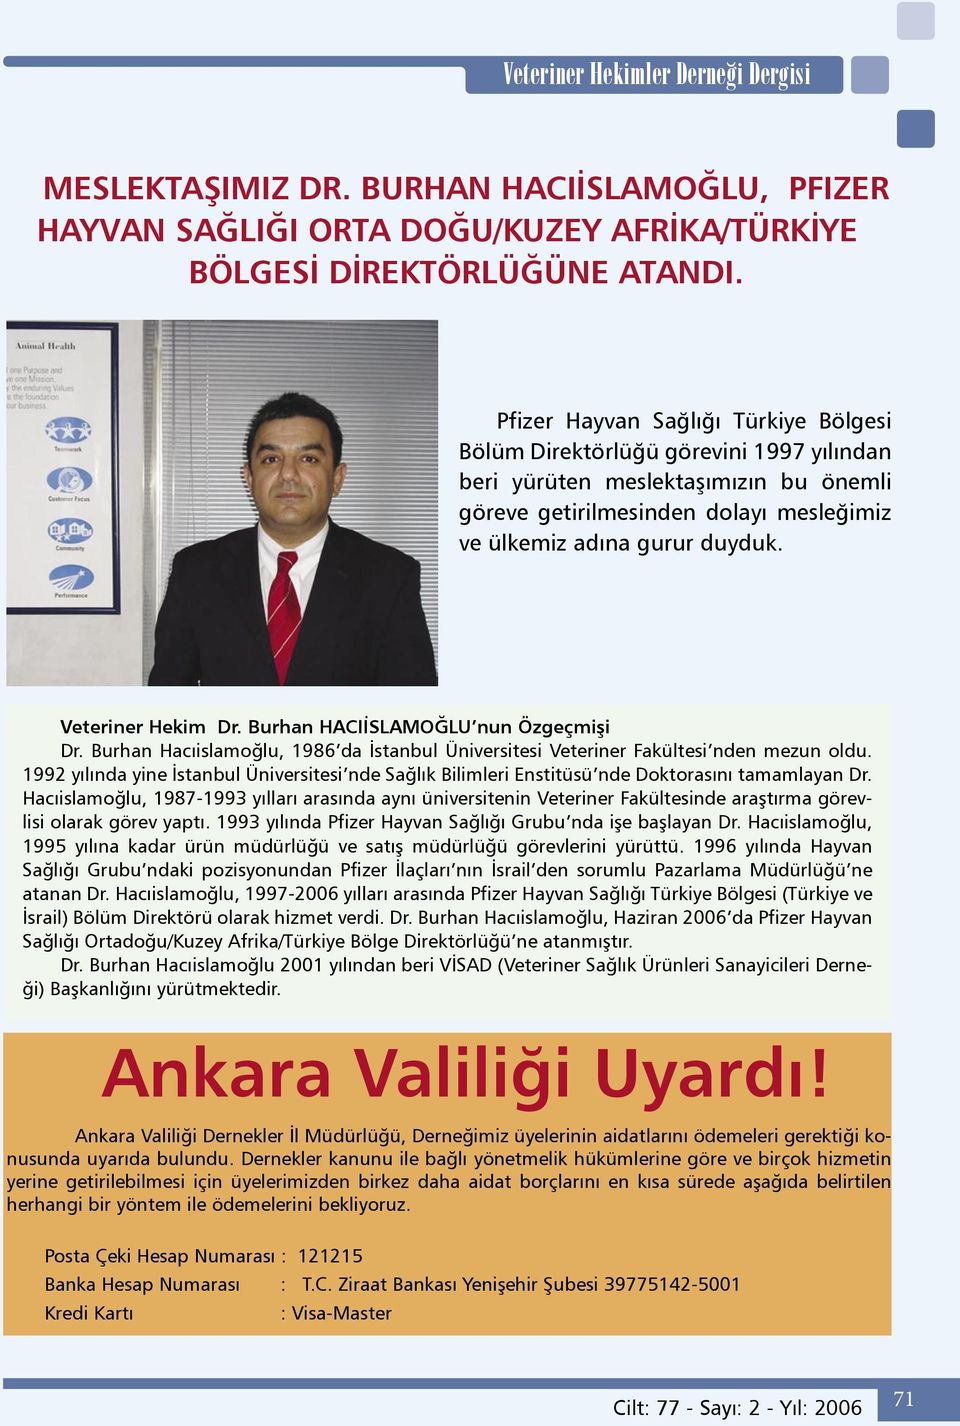 Veteriner Hekim Dr. Burhan HACIİSLAMOĞLU nun Özgeçmişi Dr. Burhan Hacıislamoğlu, 1986 da İstanbul Üniversitesi Veteriner Fakültesi nden mezun oldu.